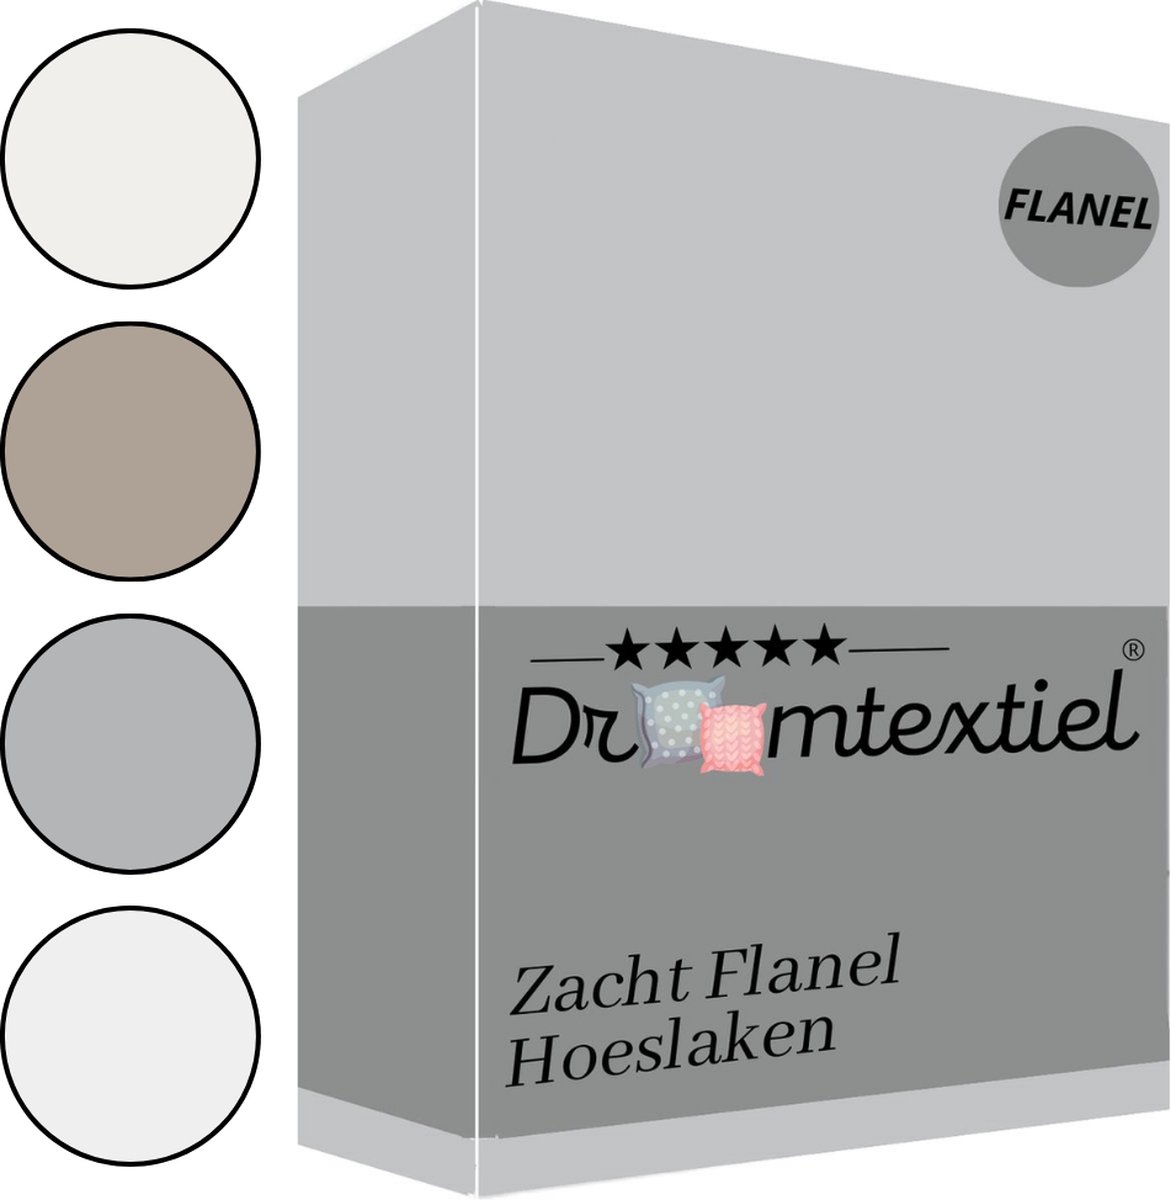 Droomtextiel Zachte Flanel Hoeslaken Grijs Lits-Jumeaux 180x200 cm - 100% Gekamd Katoen